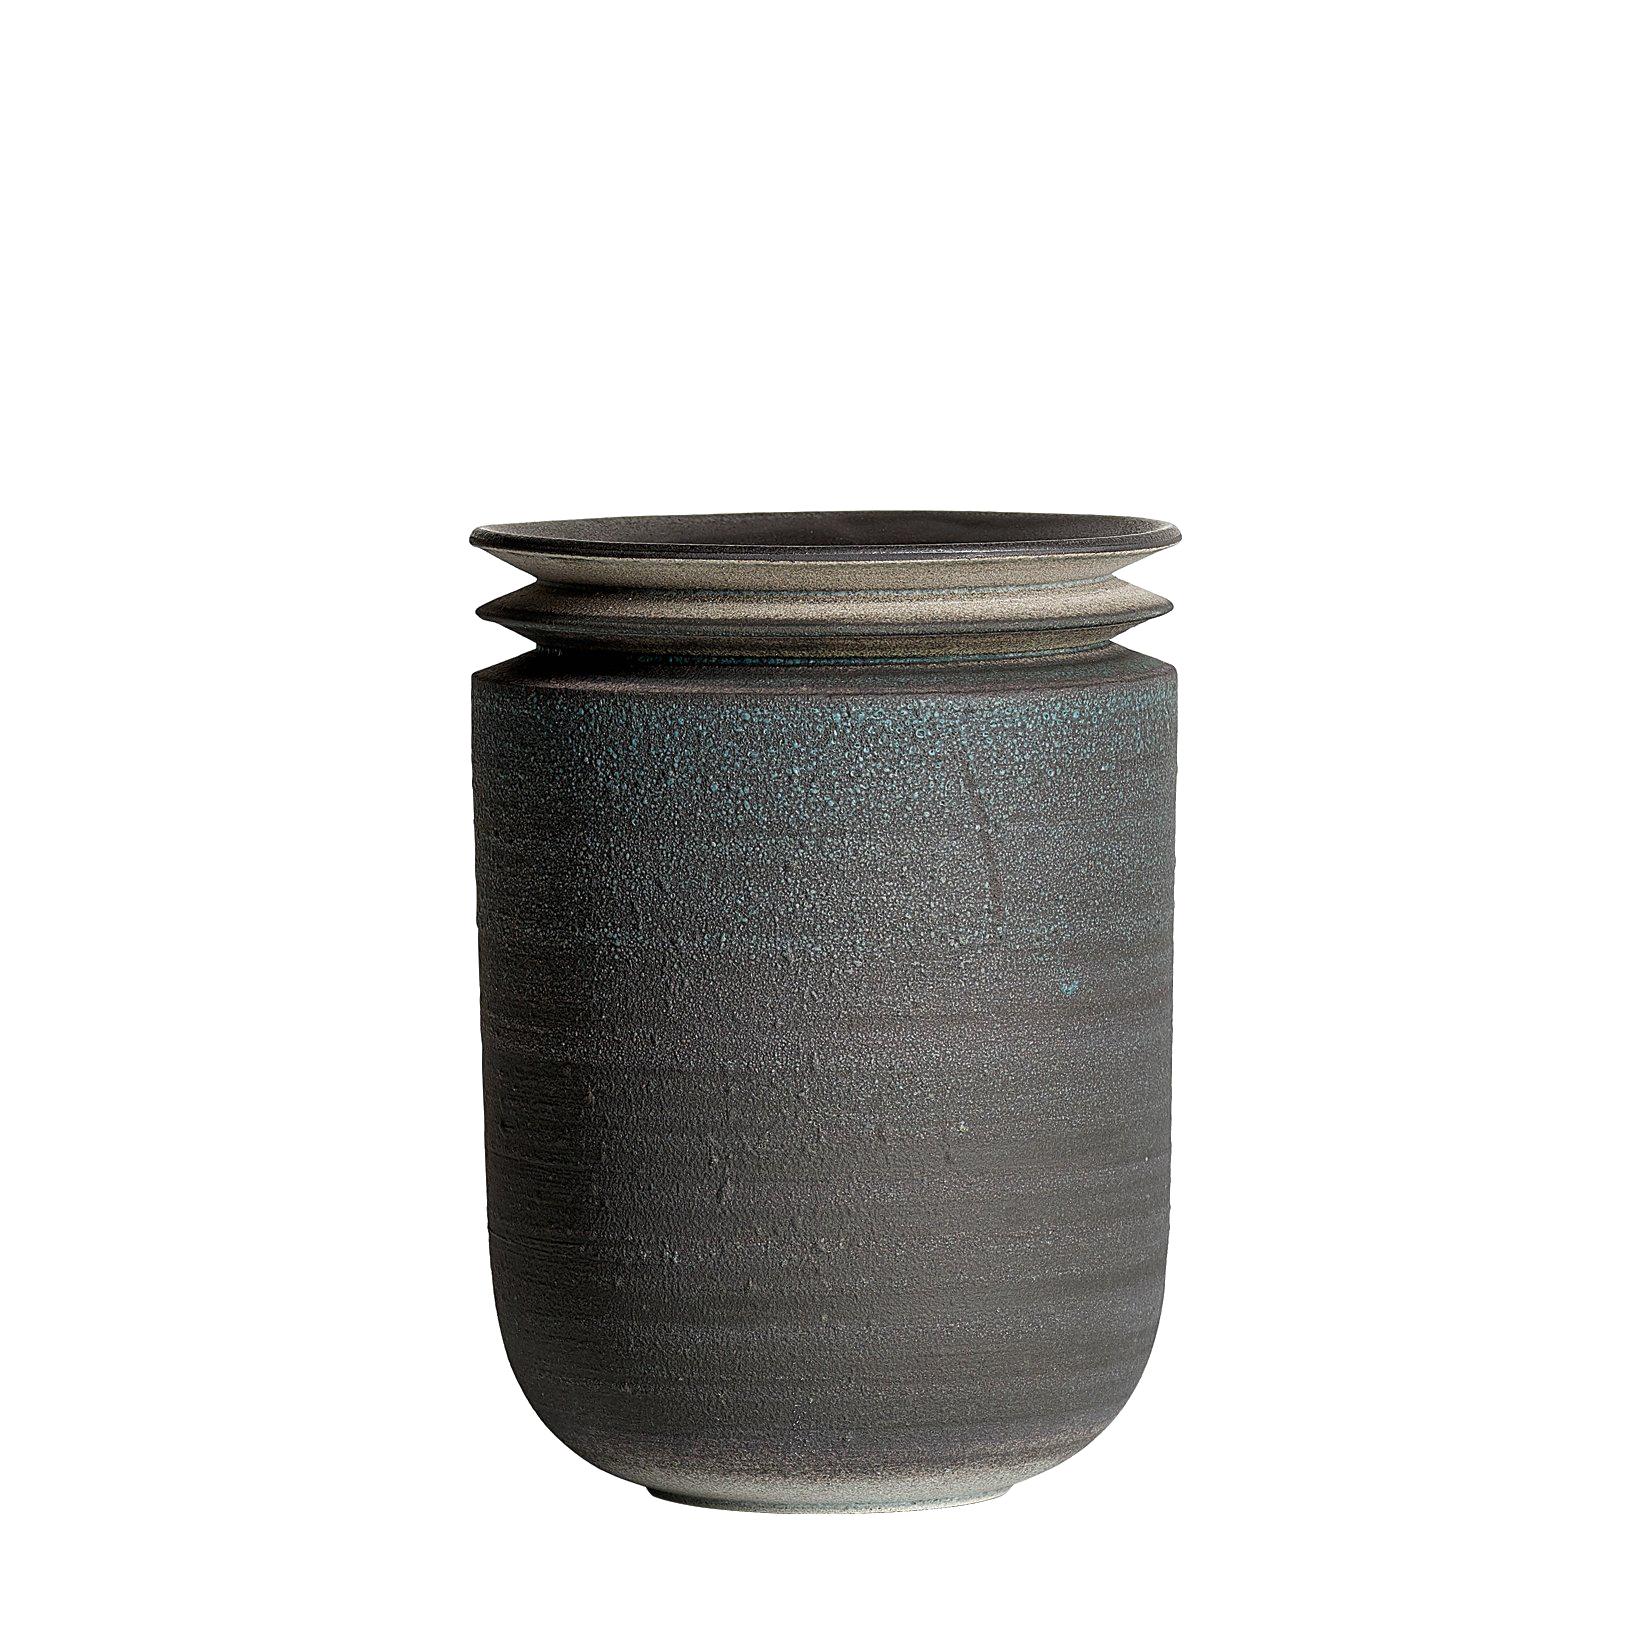 Strata, Vessel M, Slip Cast Ceramic Vase, N/O Vessels Collection For Sale